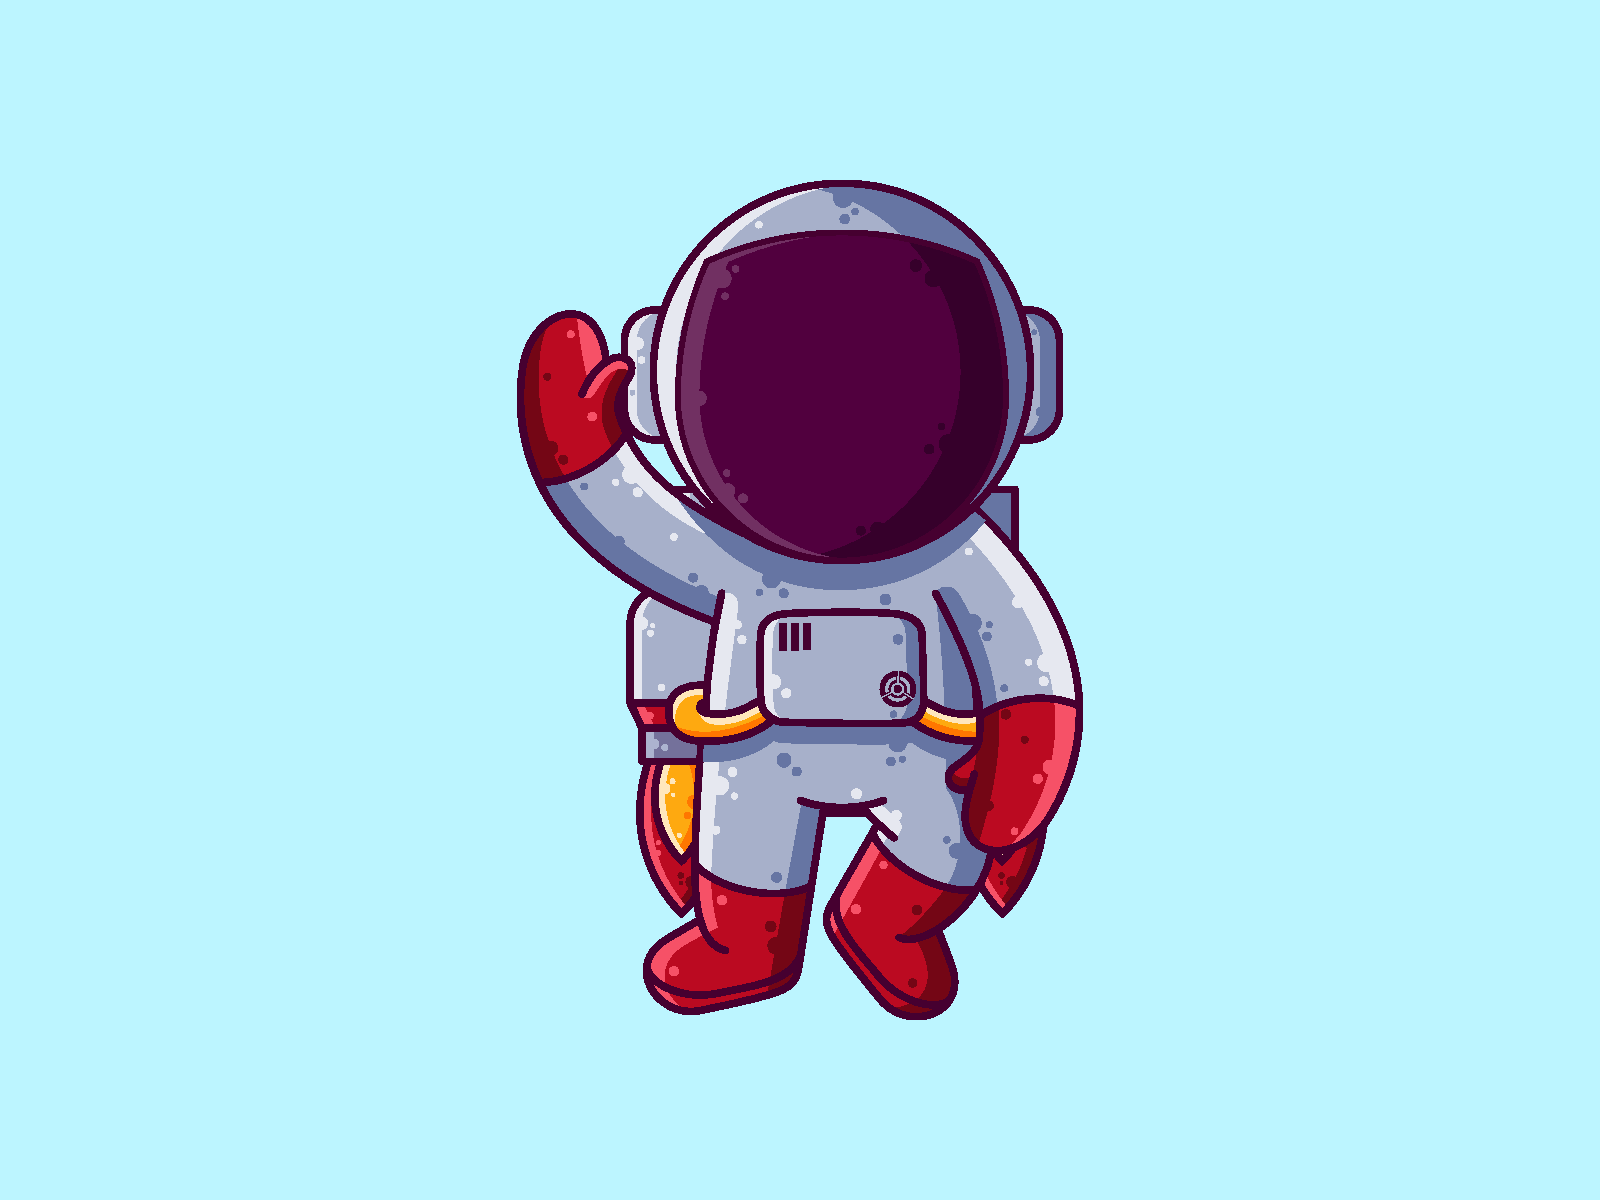 jetpack astronaut in space